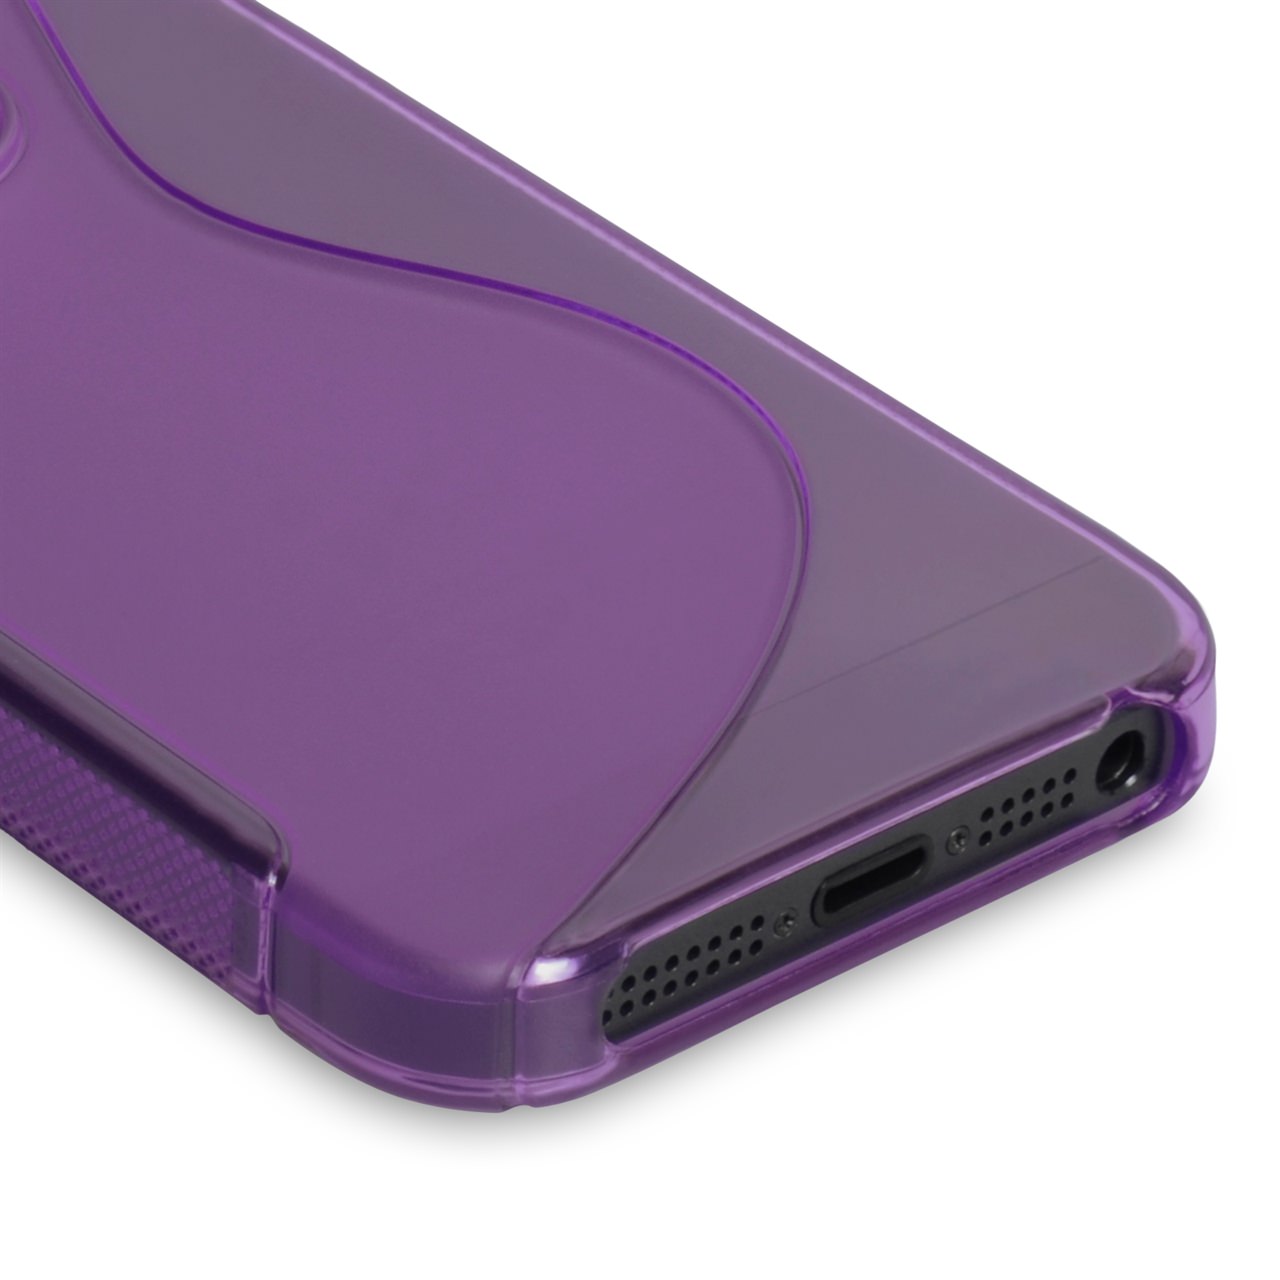 Caseflex iPhone SE S-Line Gel Case - Purple